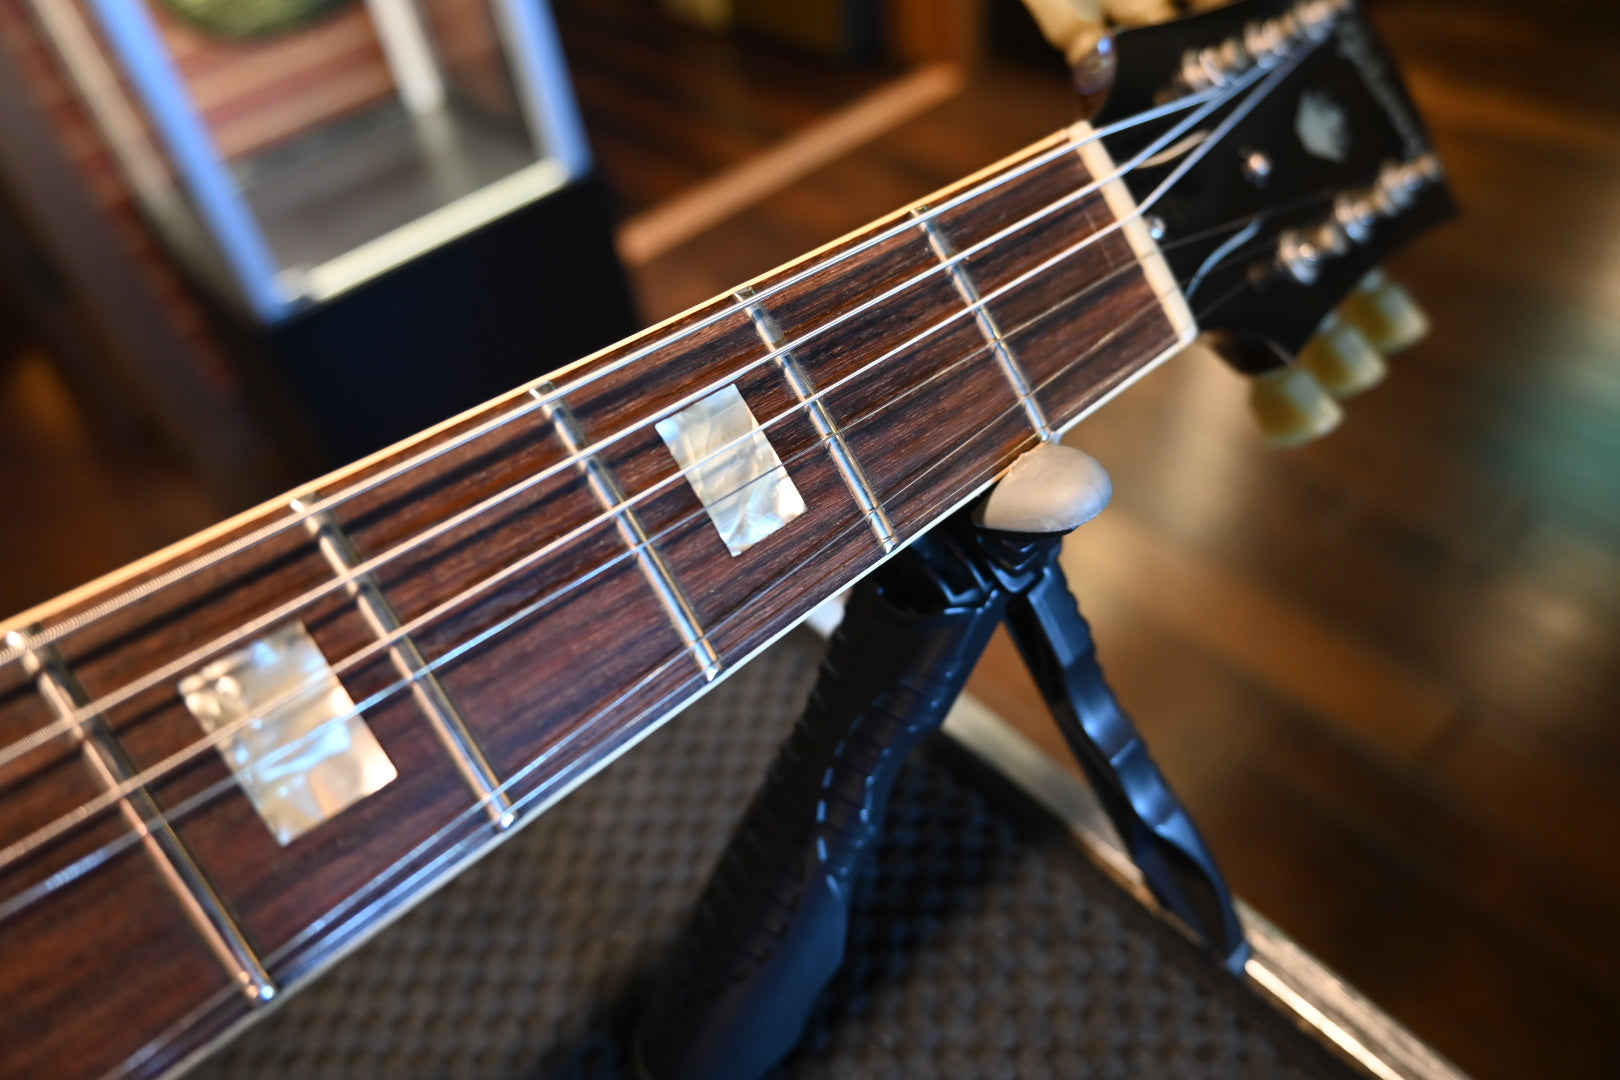 Gibson 1967 ES-335TD - Sunburst #065282 - Danville Music